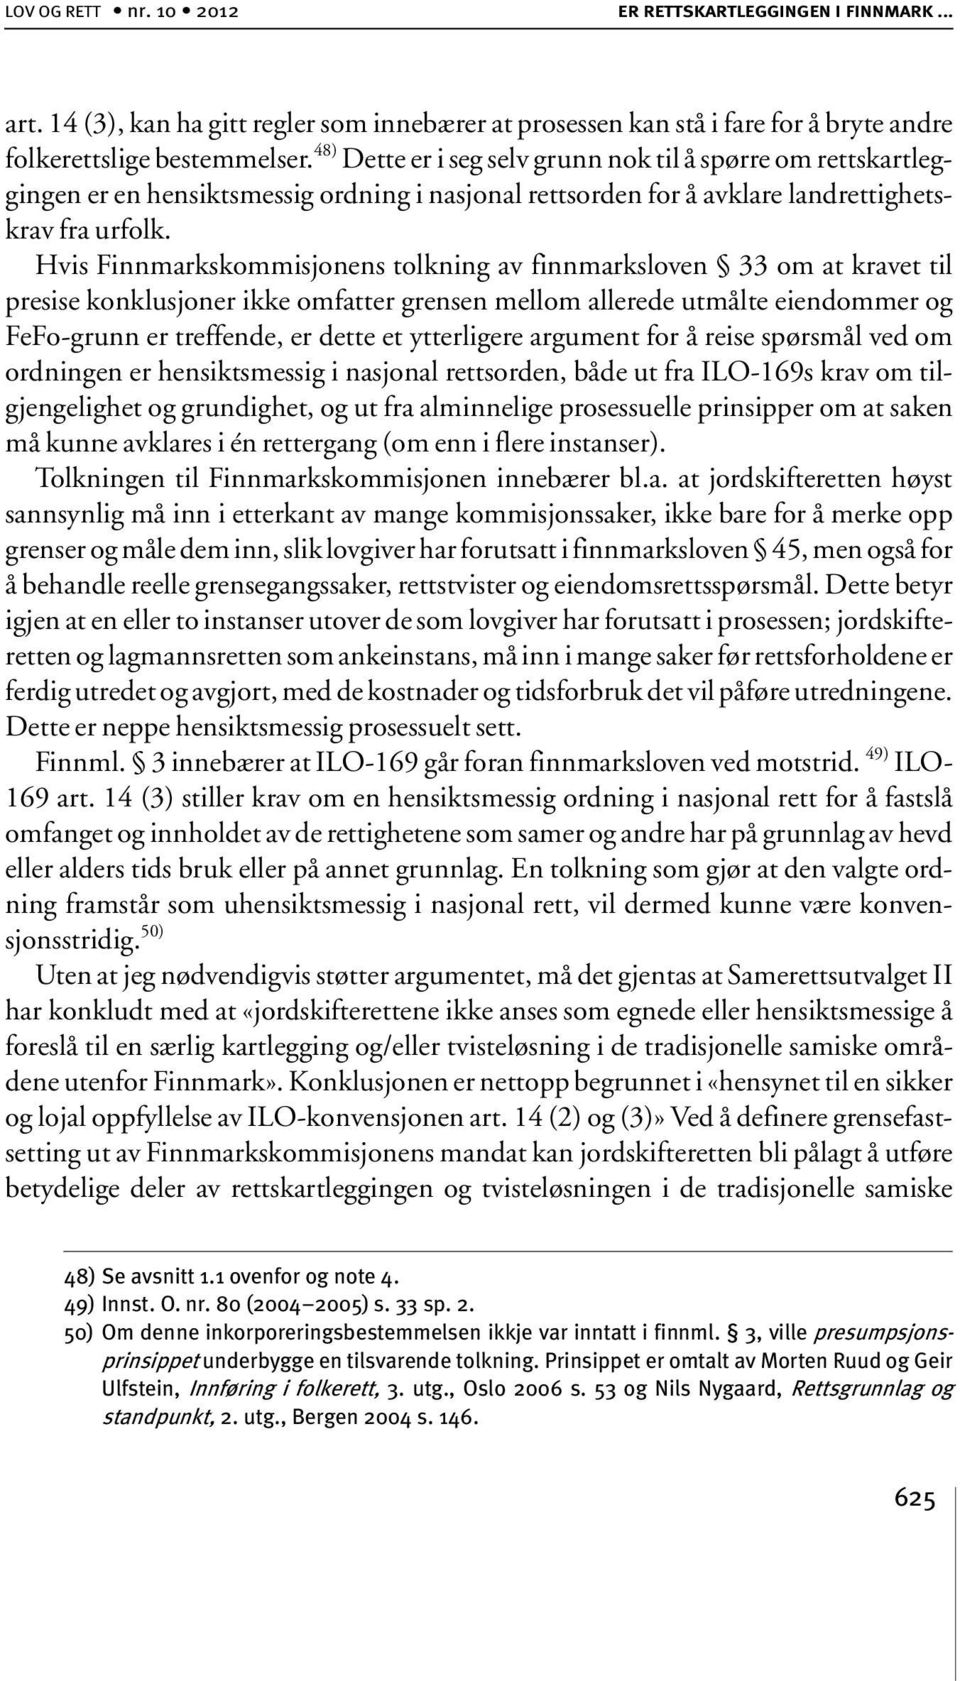 Hvis Finnmarkskommisjonens tolkning av finnmarksloven 33 om at kravet til presise konklusjoner ikke omfatter grensen mellom allerede utmålte eiendommer og FeFo-grunn er treffende, er dette et